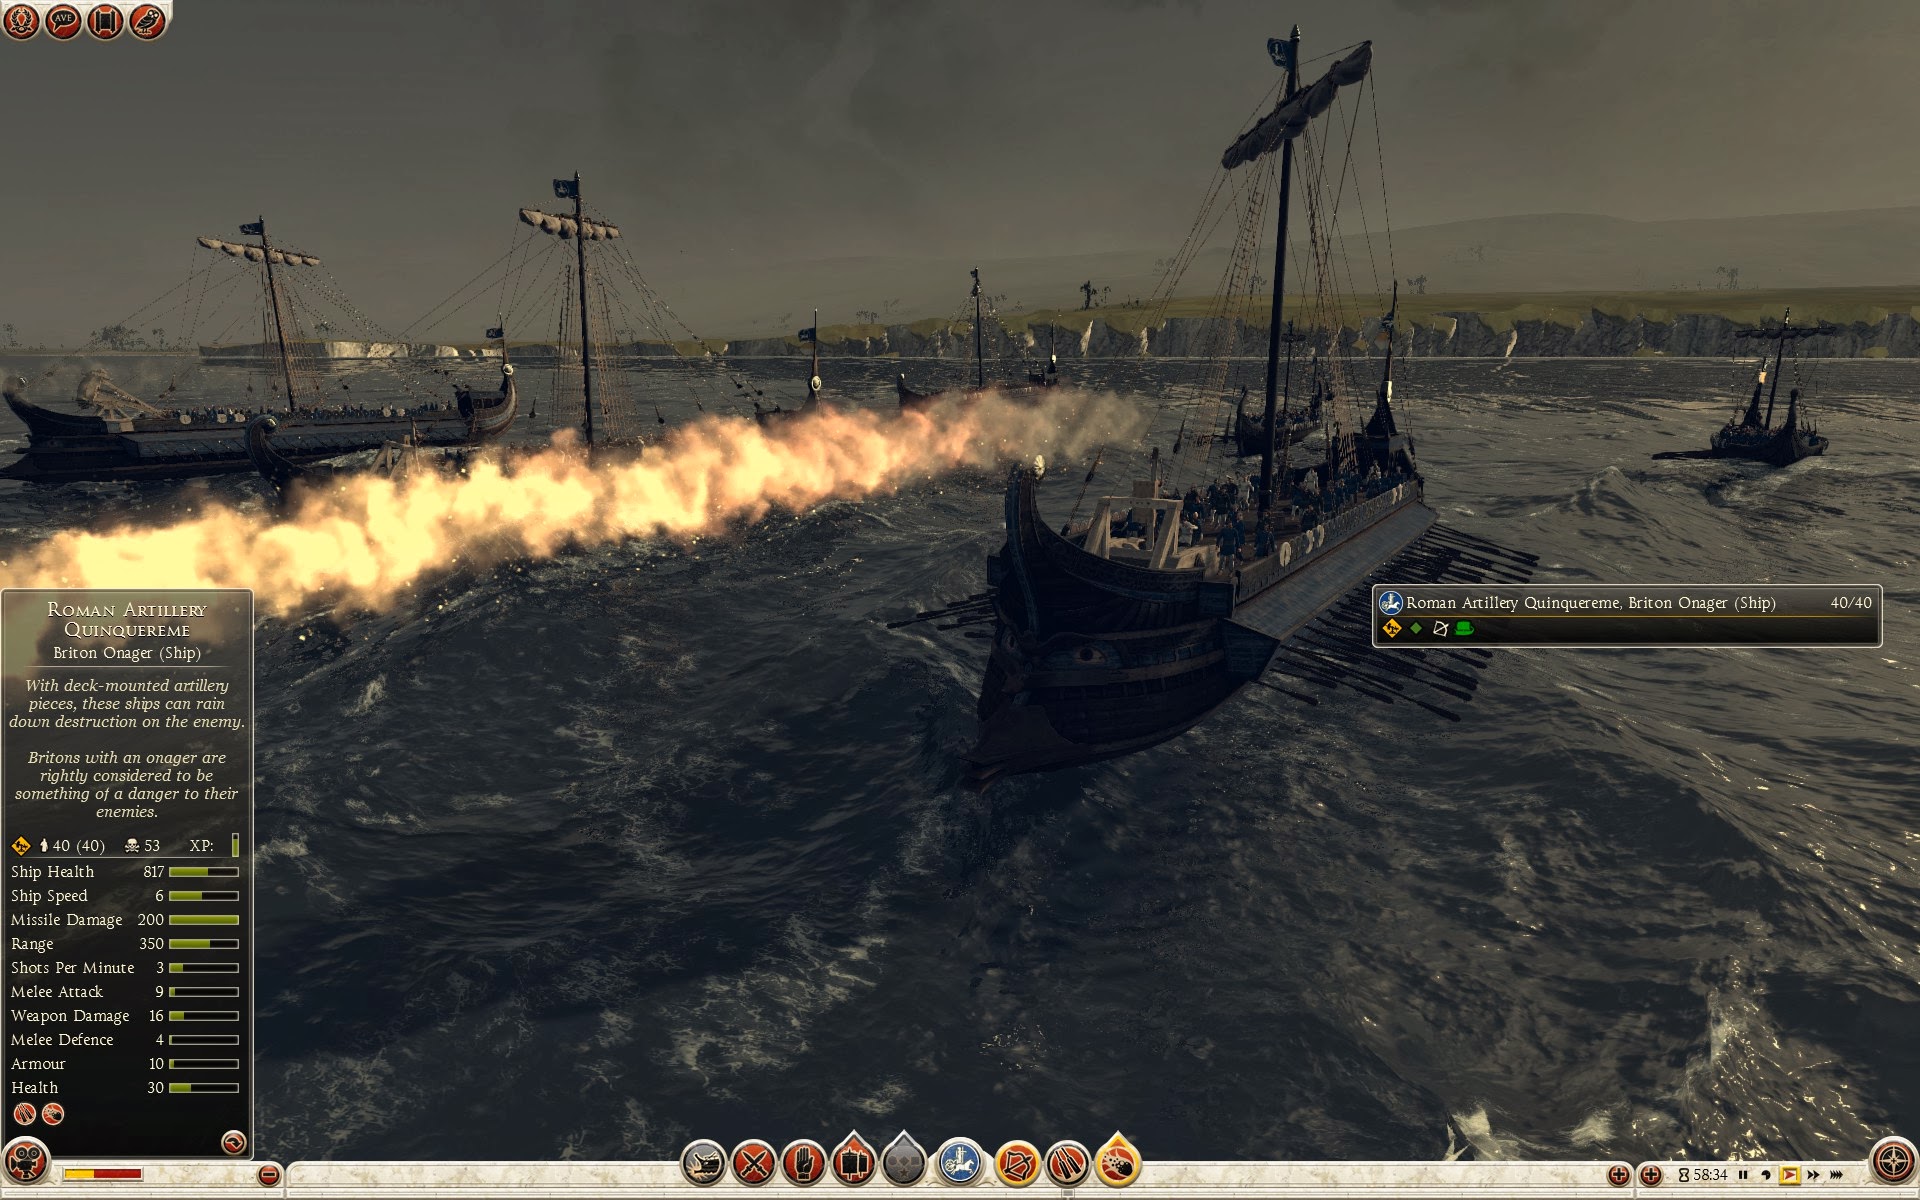 Quinquerreme romano de artillería - Onagro britano (barco)